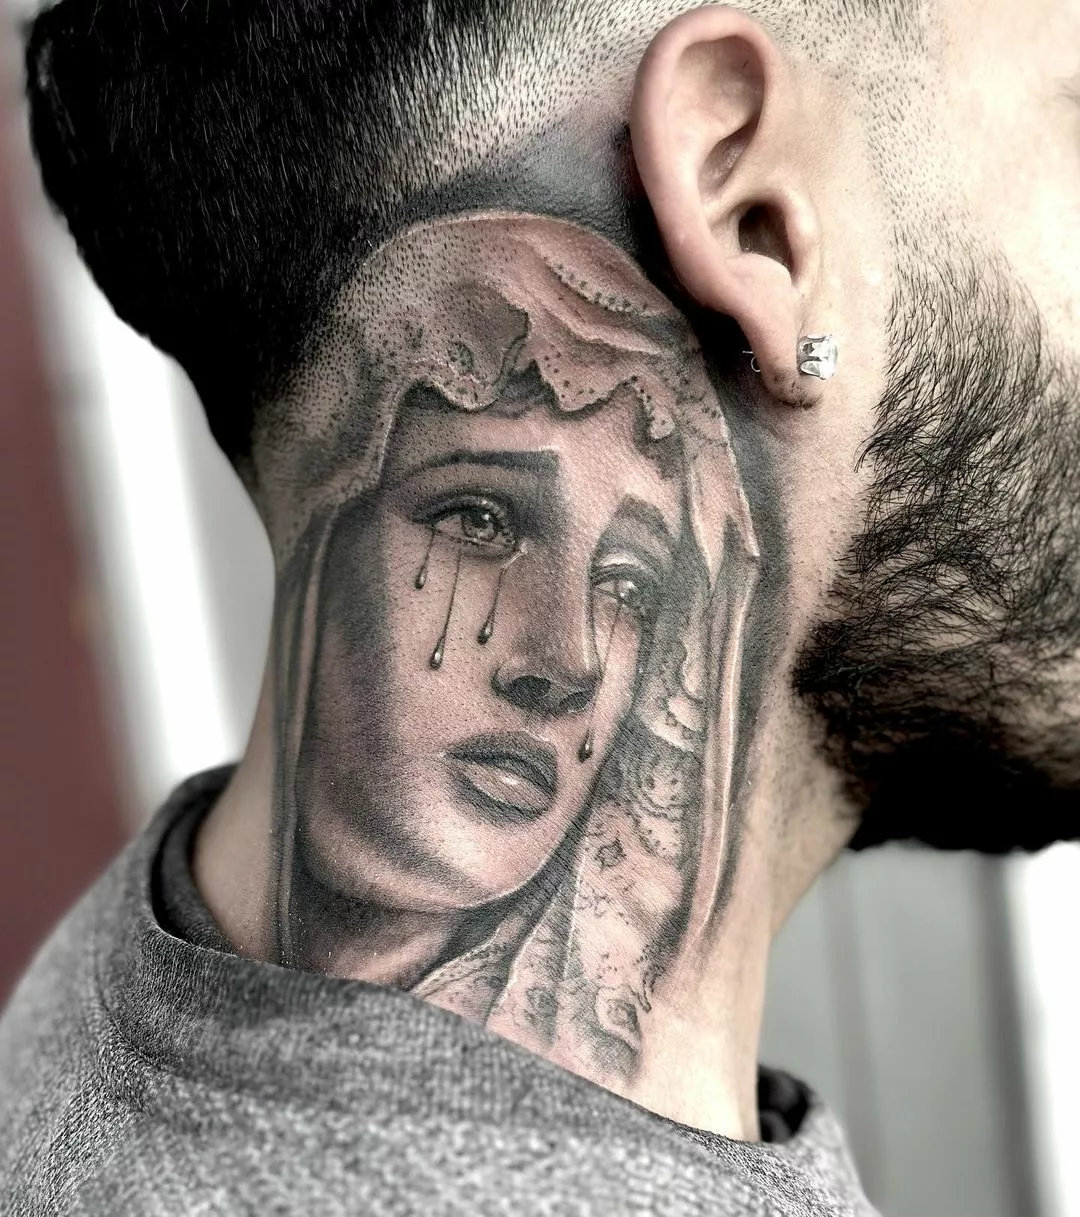 virgin mary tattoo on neck